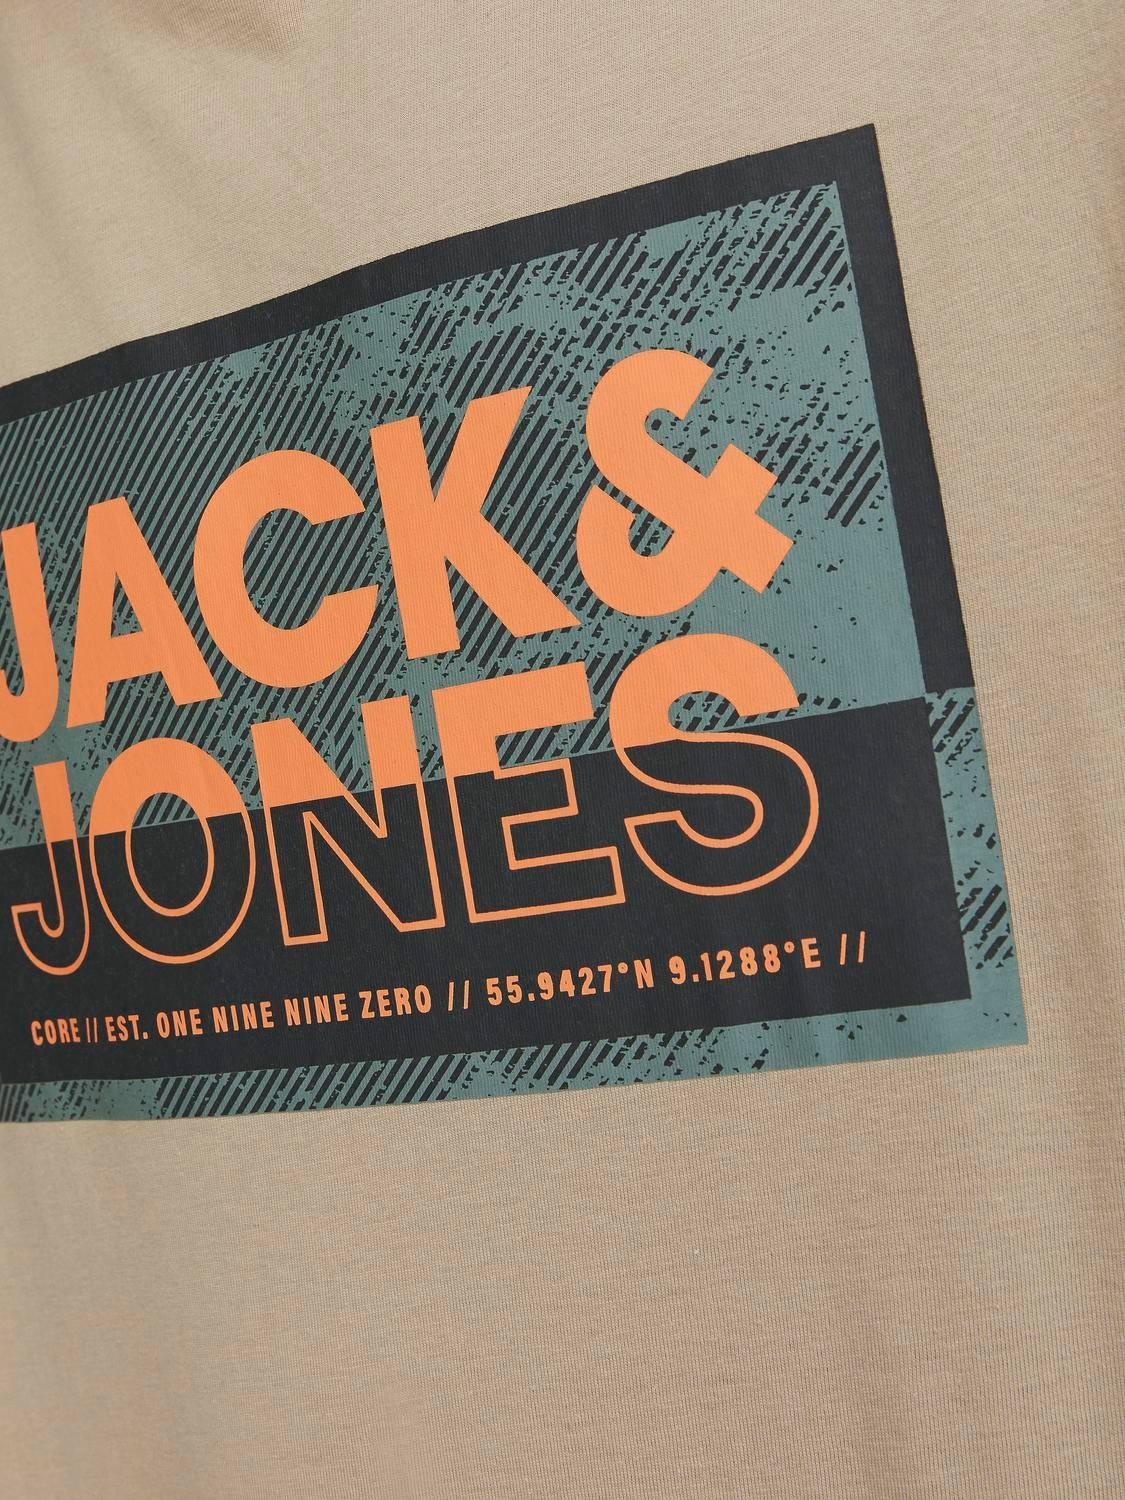 Jack & Jones 3-pakning Trykk O-hals T-skjorte -Navy Blazer - 12260780